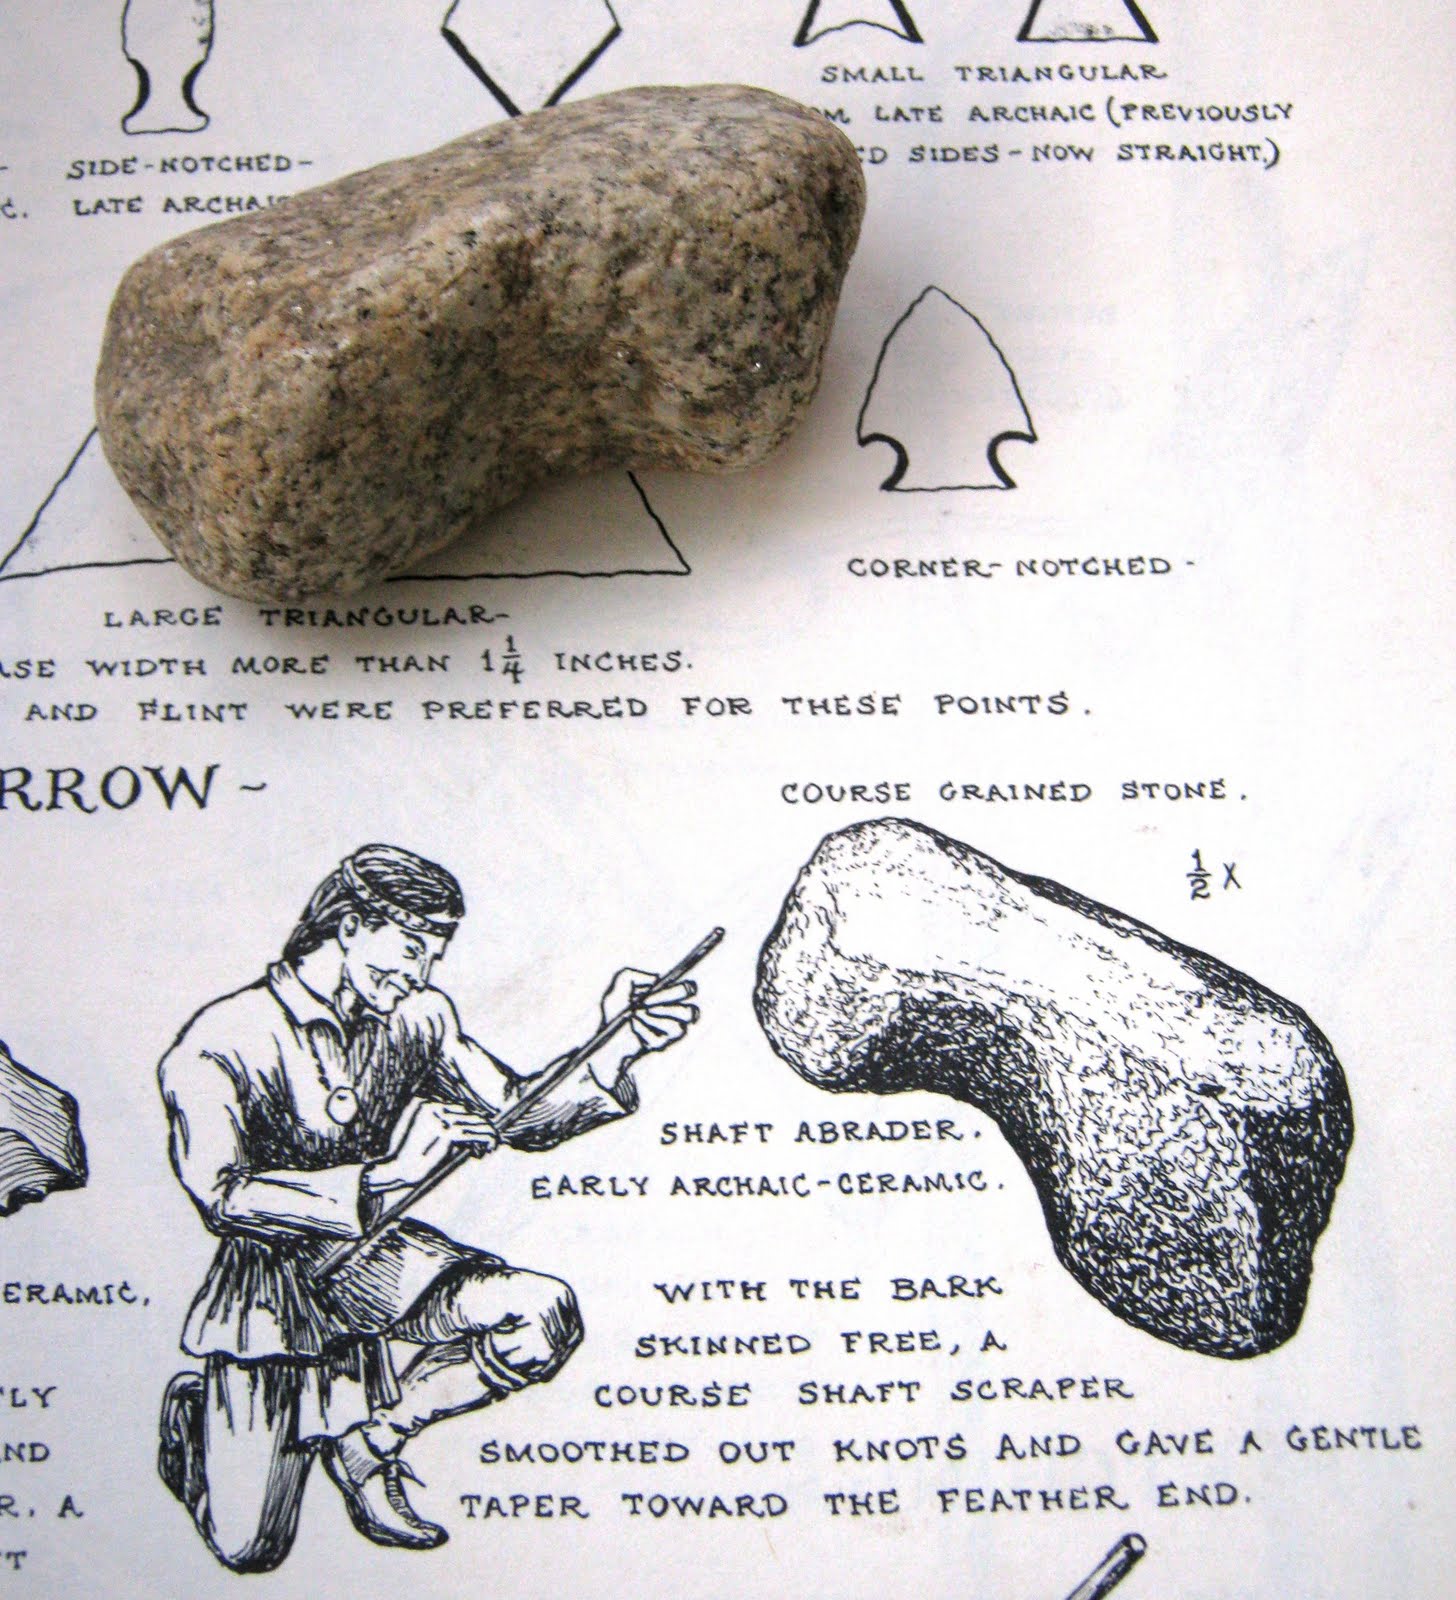 The two stones. Индейцы книга артефакт.